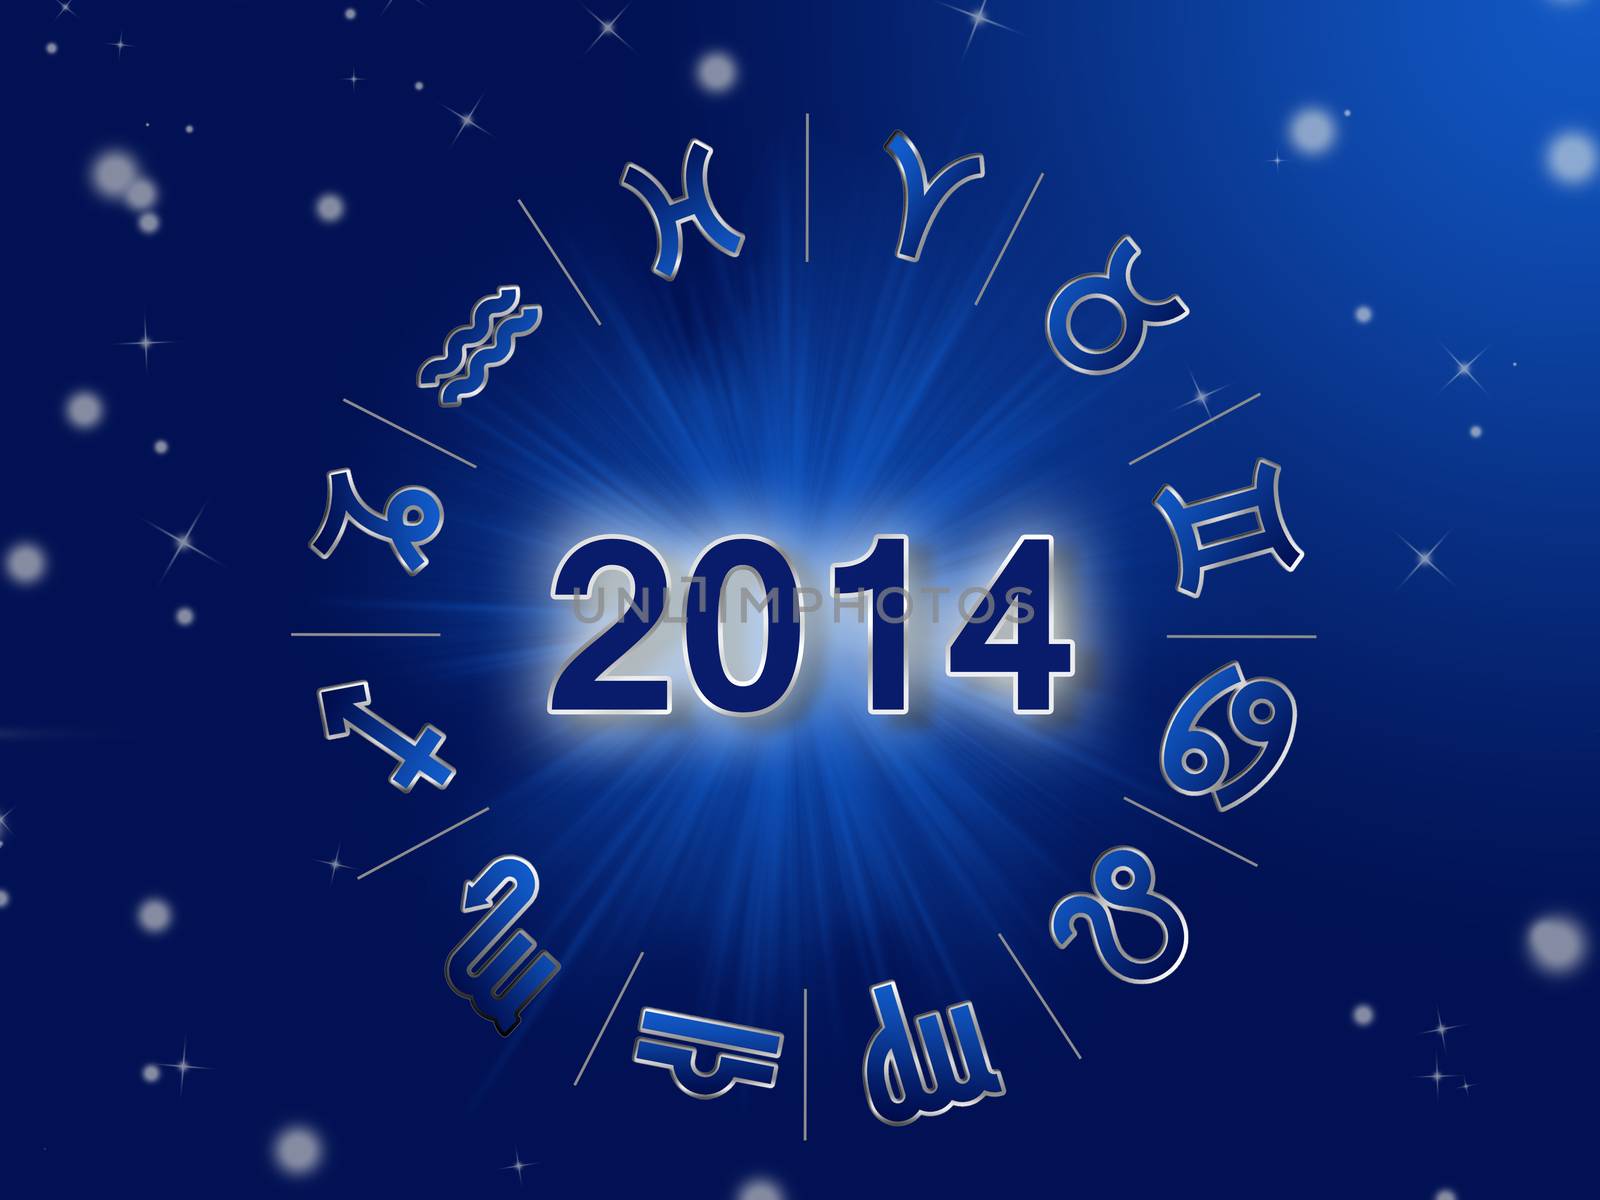 2014 Horoscope by Dddaca